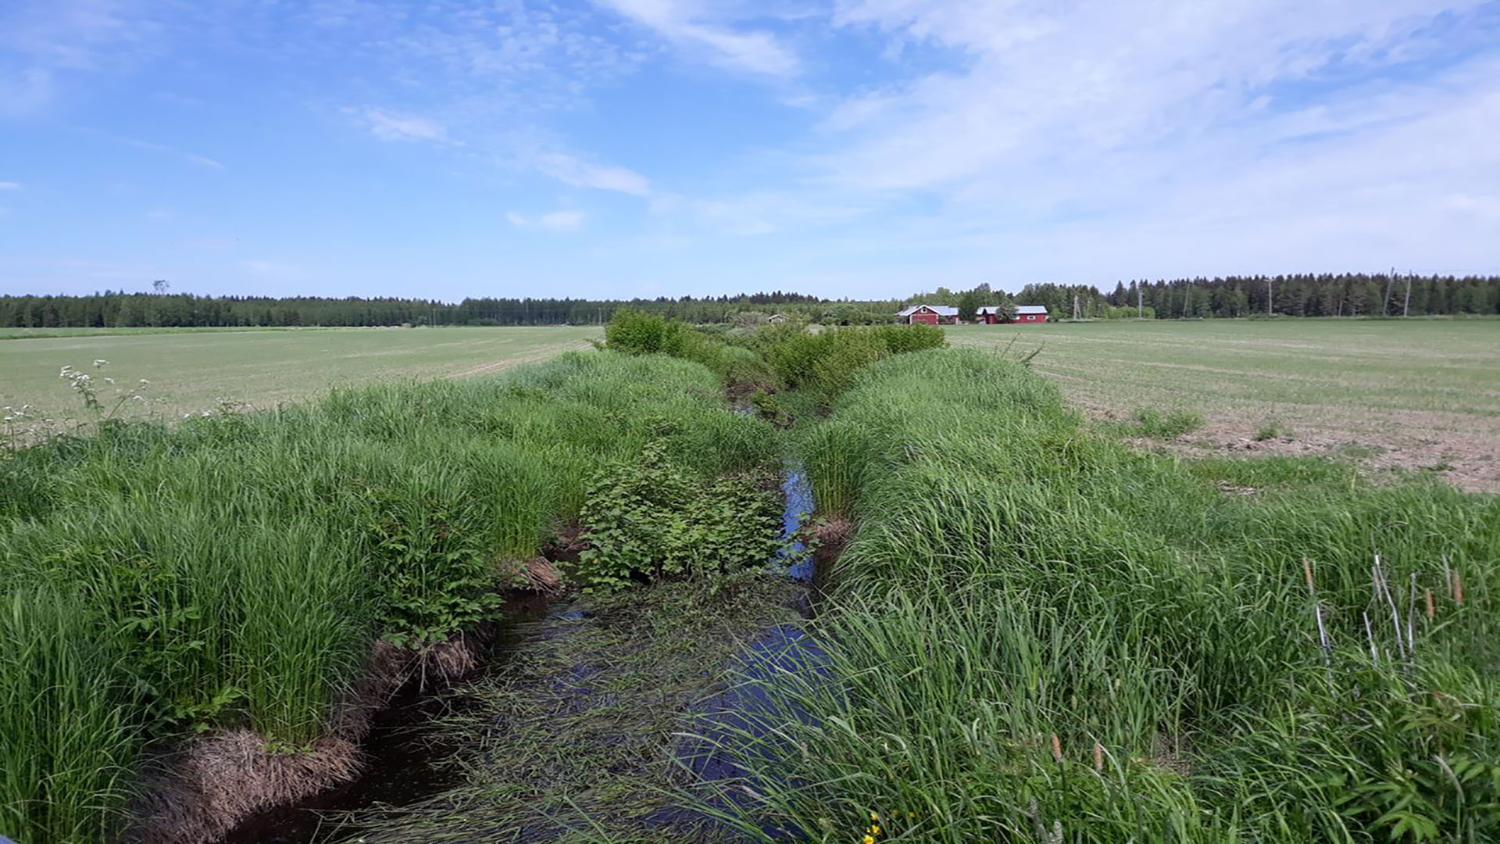 Salinjoen valuma-alueella tarvitaan ratkaisuja peltojen vesitalousongelmiin sekä ravinteiden vesiin pääsyn vähentämiseksi.